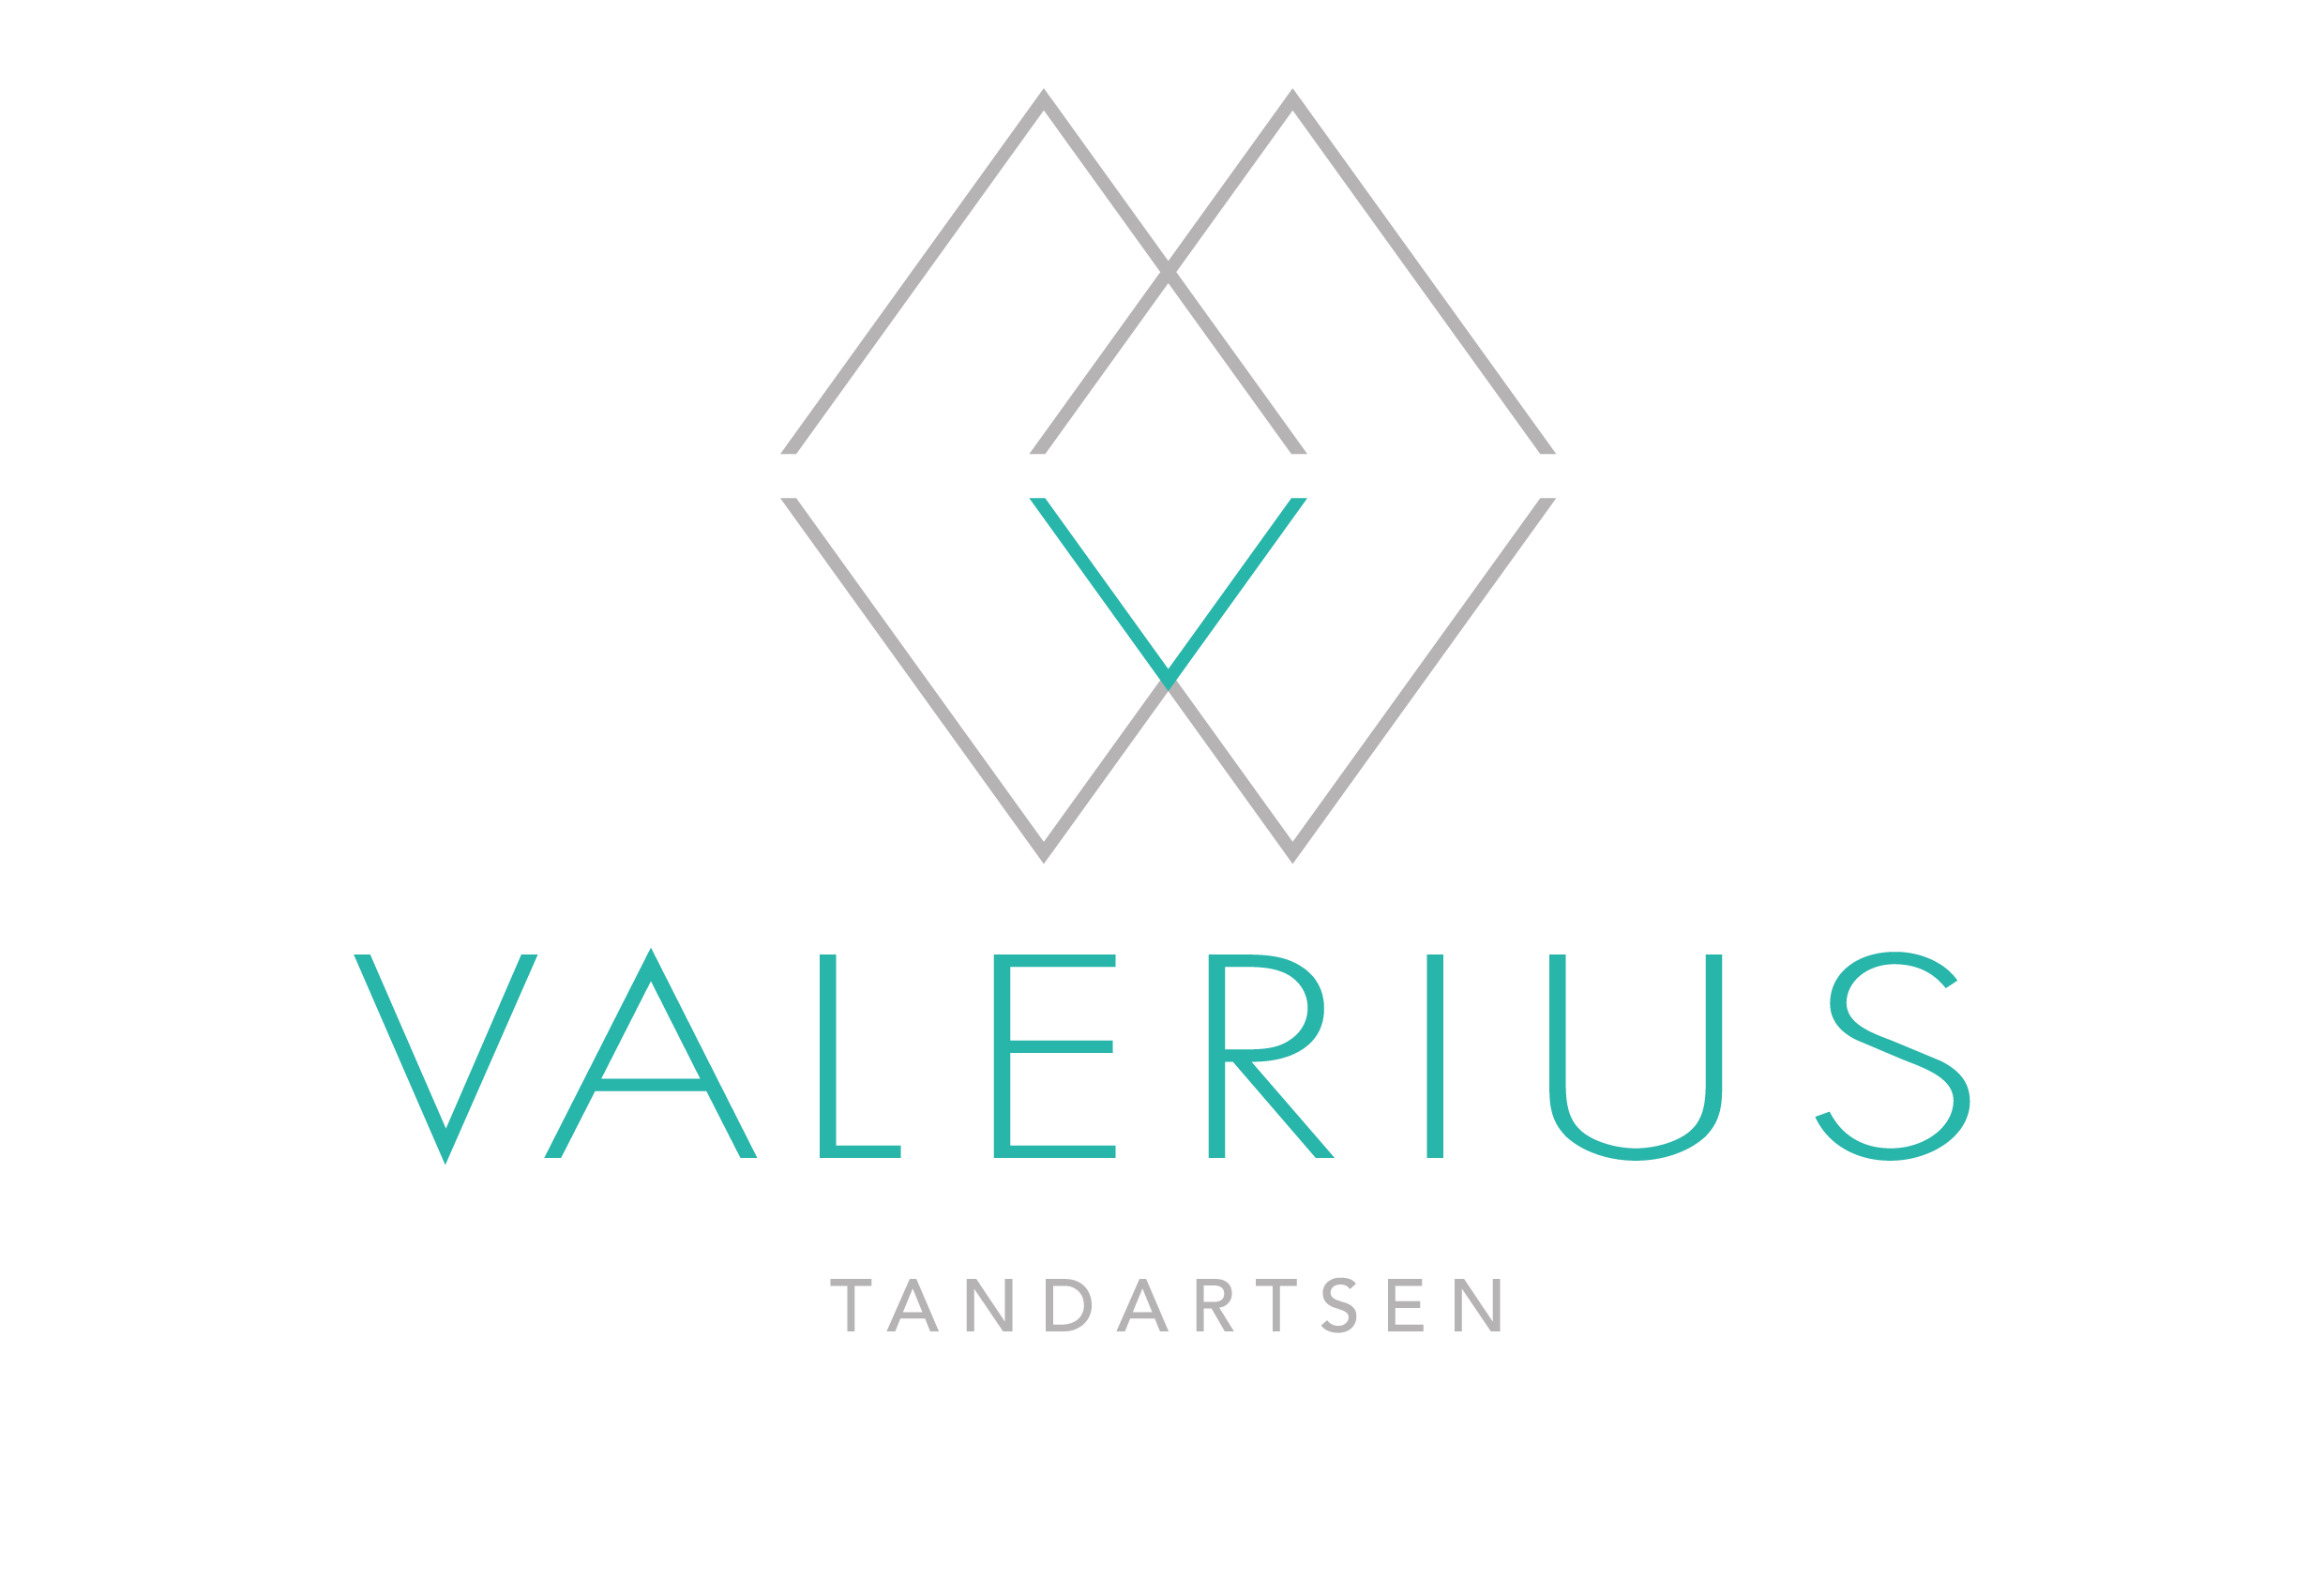 Valerius Tandartsen